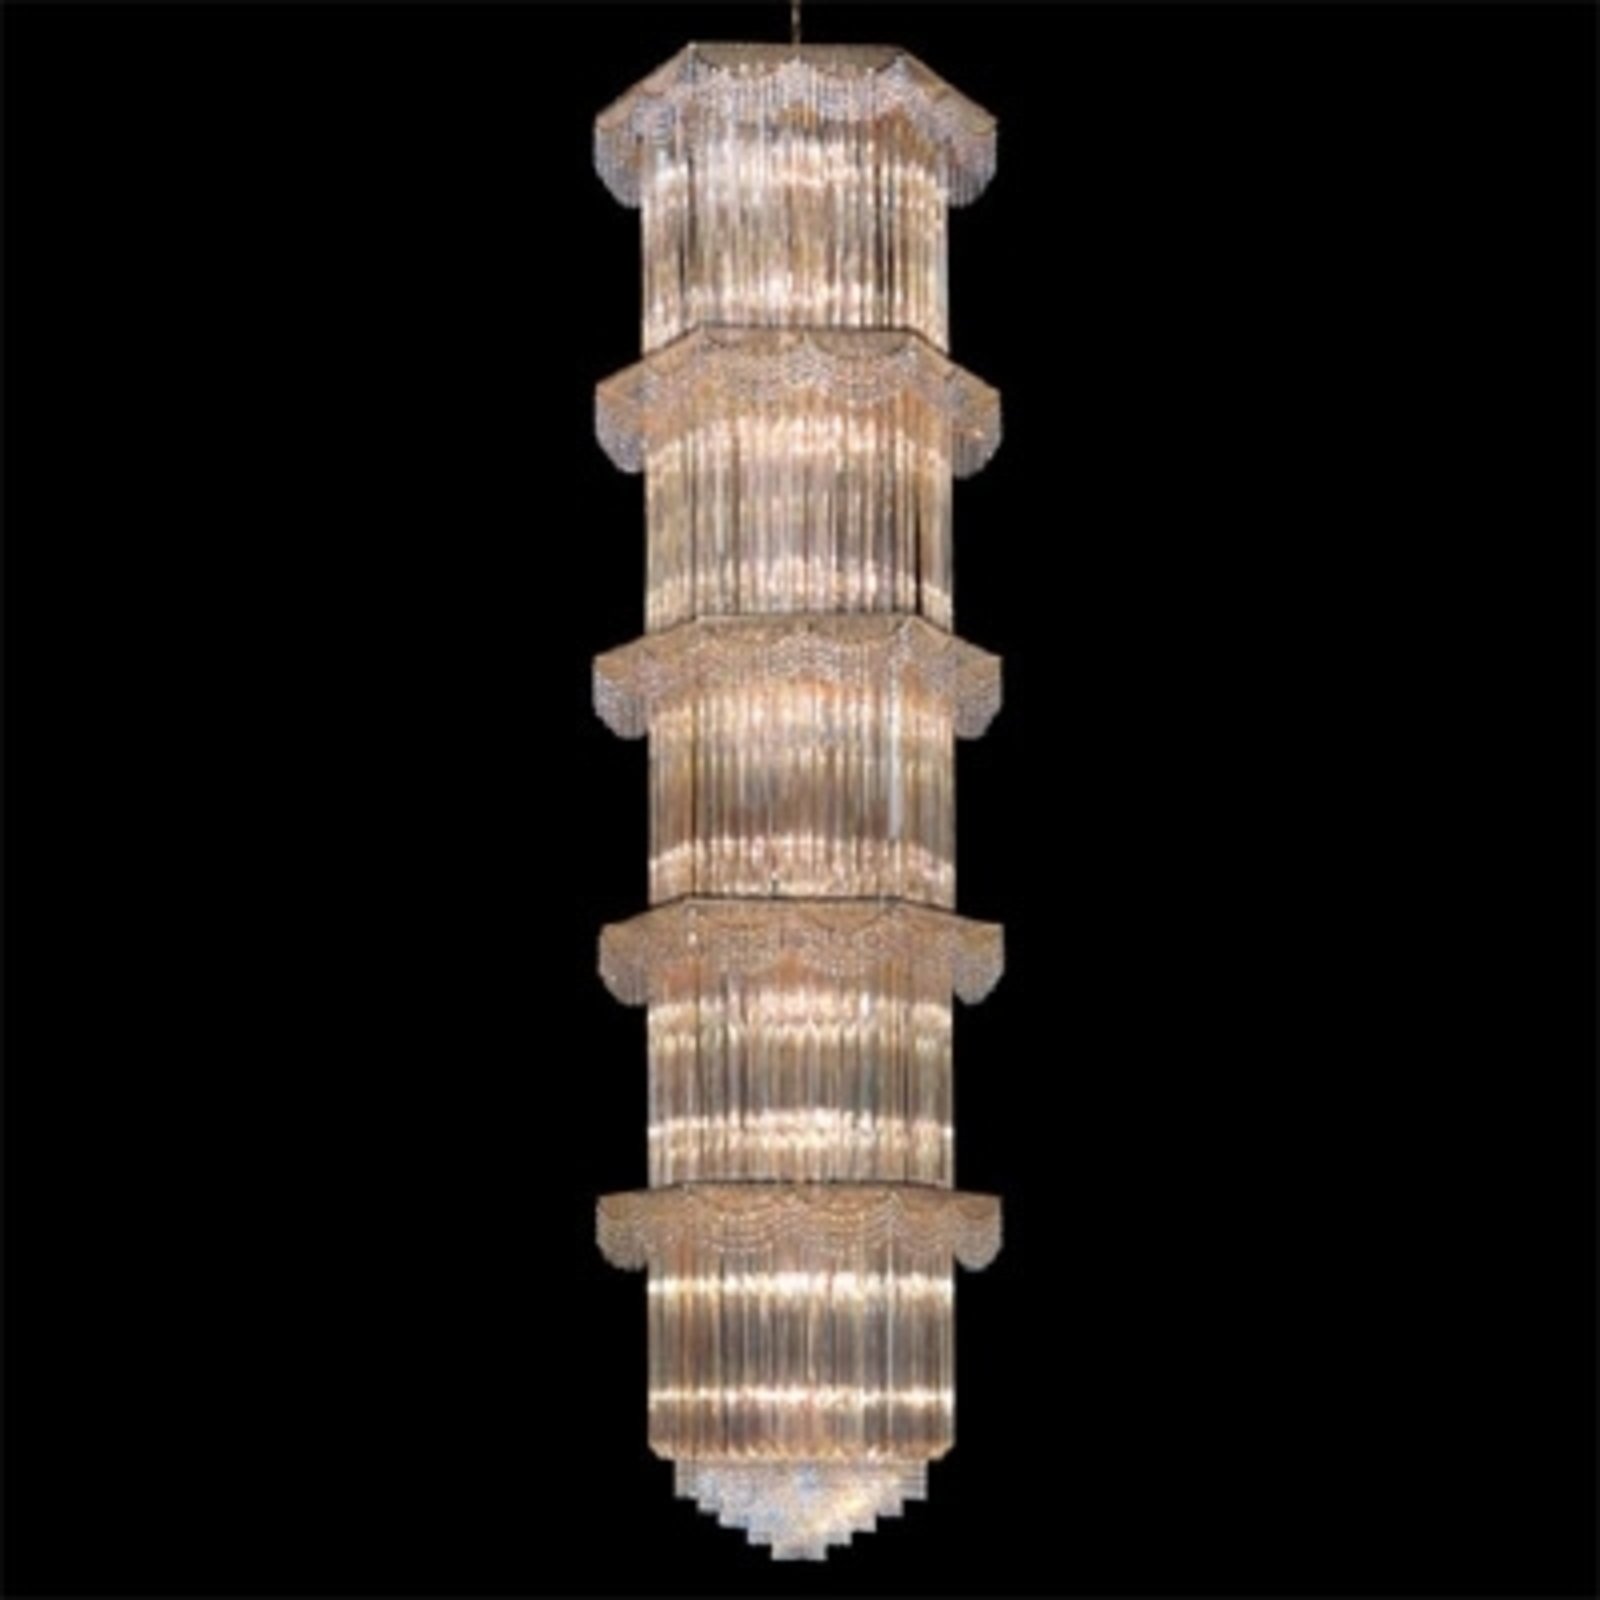 Függő lámpa Cristalli 340 cm magas, borostyán